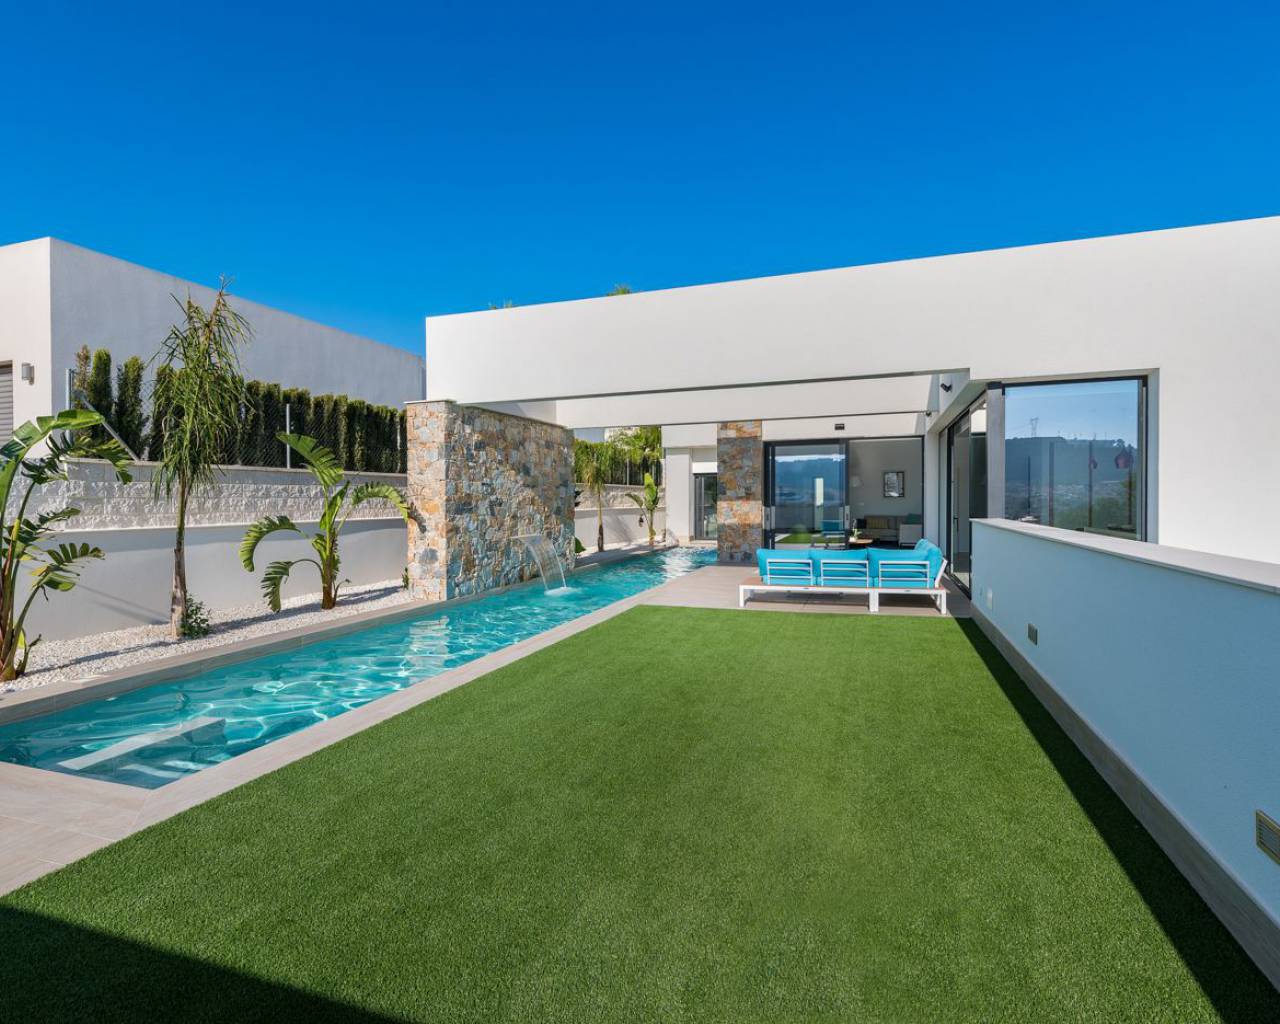 Villa de obra nueva con piscina en venta Alicante